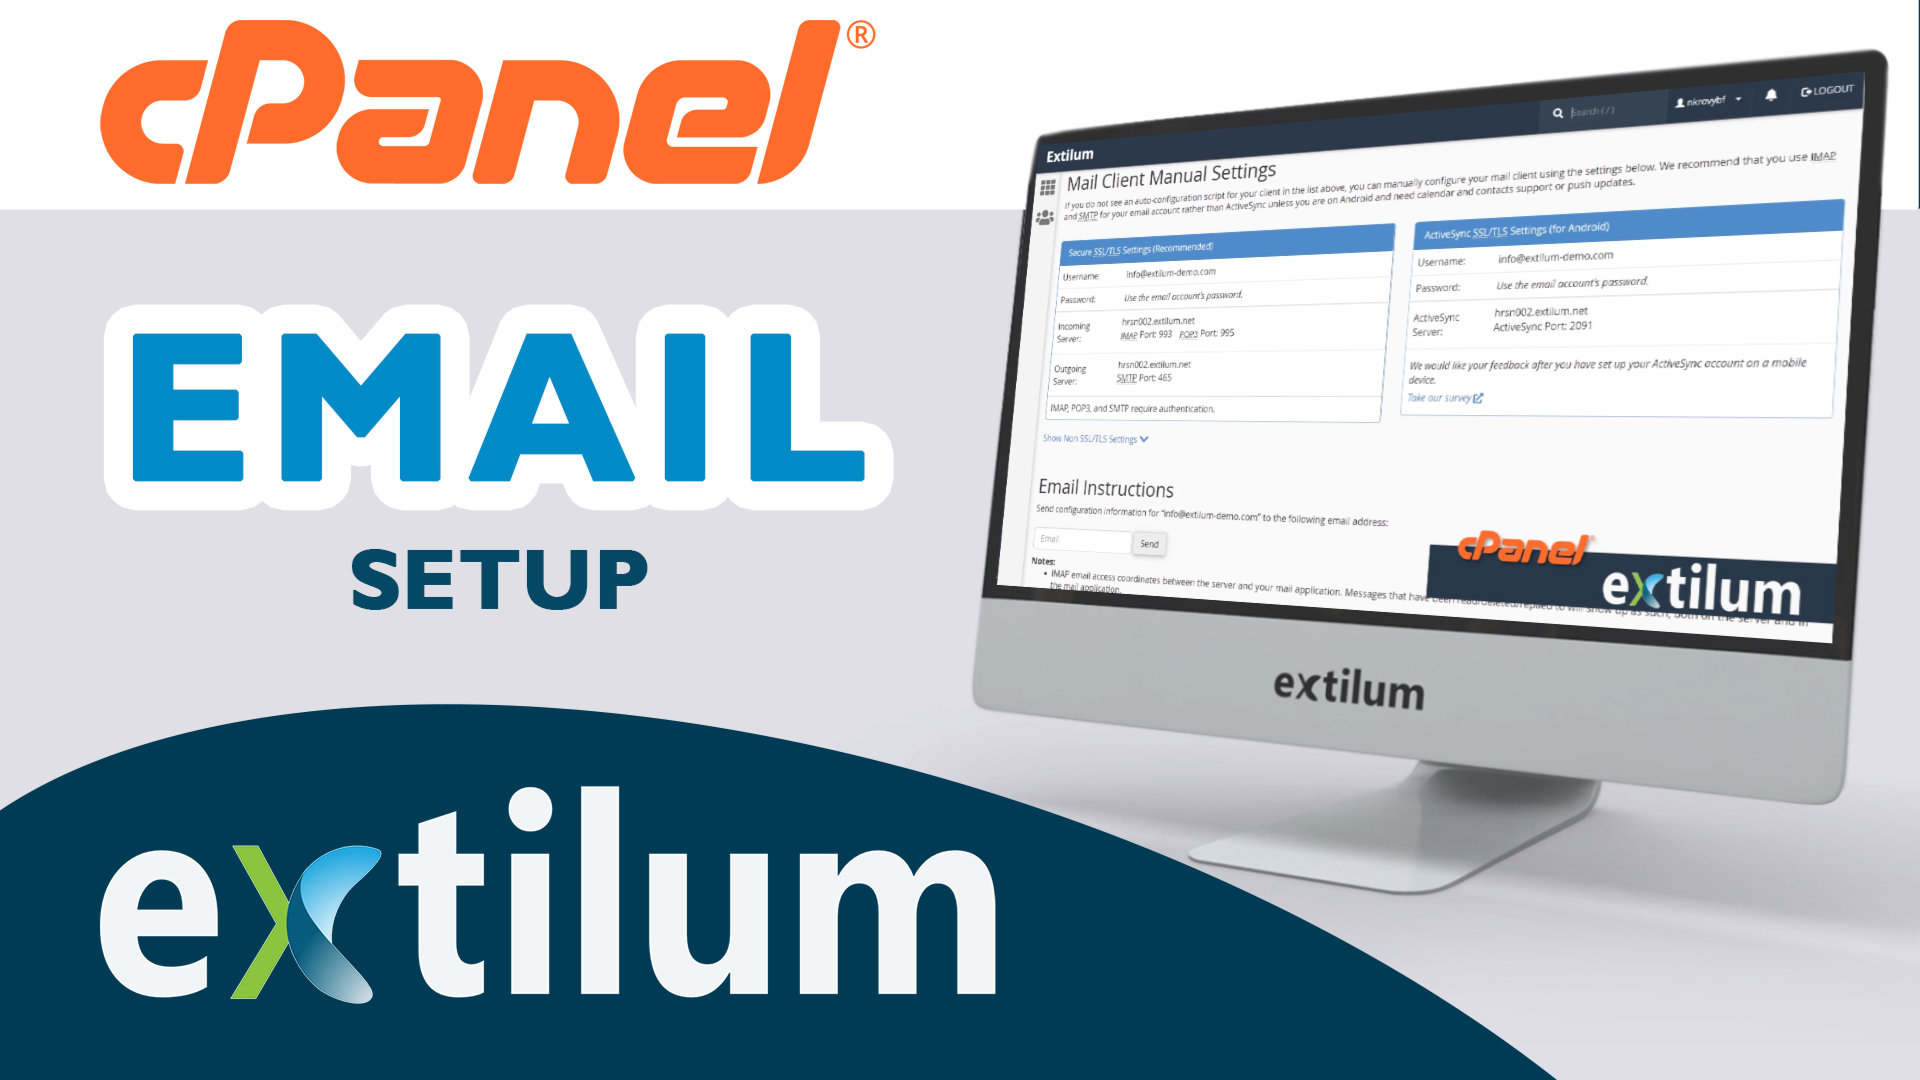 Extilum cPanel - Create Email